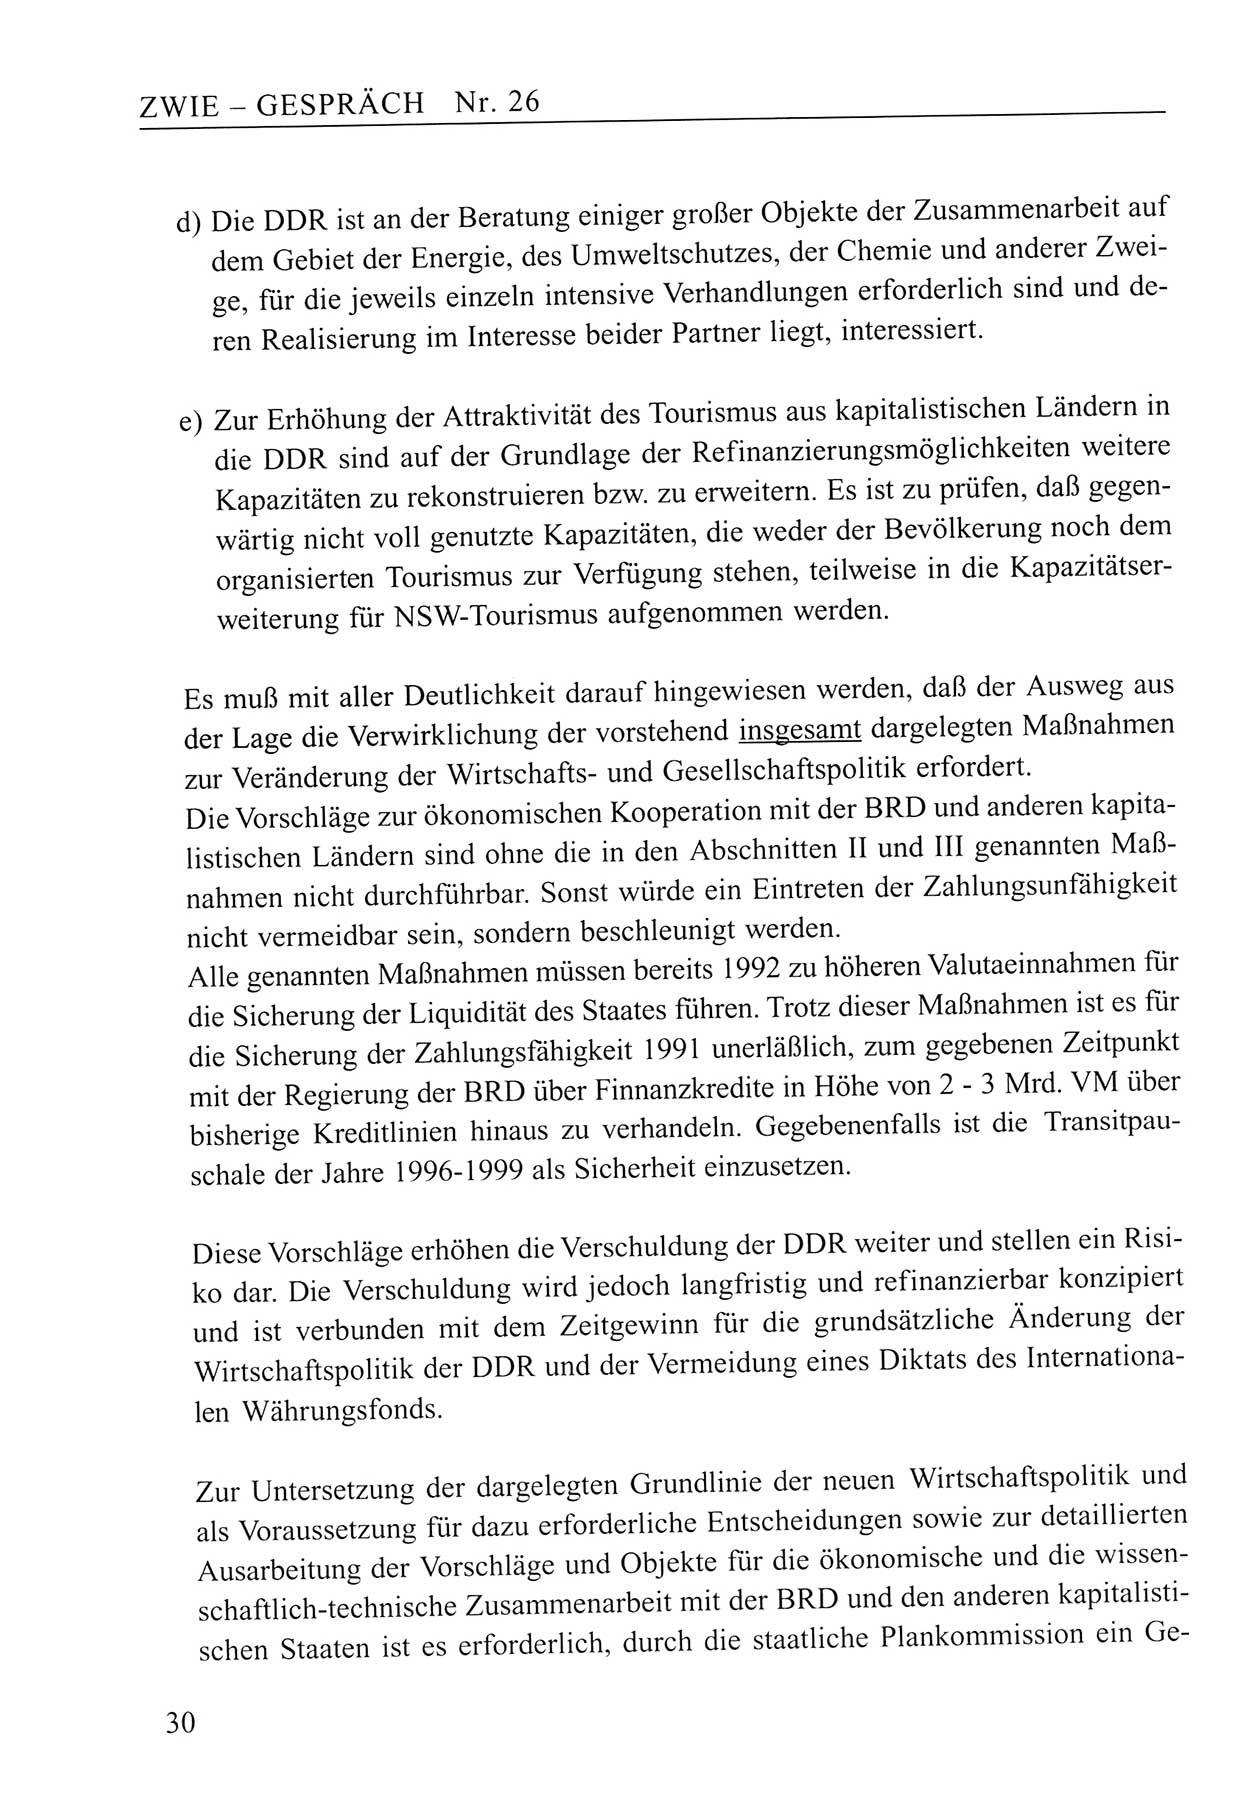 Zwie-Gespräch, Beiträge zum Umgang mit der Staatssicherheits-Vergangenheit [Deutsche Demokratische Republik (DDR)], Ausgabe Nr. 26, Berlin 1995, Seite 30 (Zwie-Gespr. Ausg. 26 1995, S. 30)